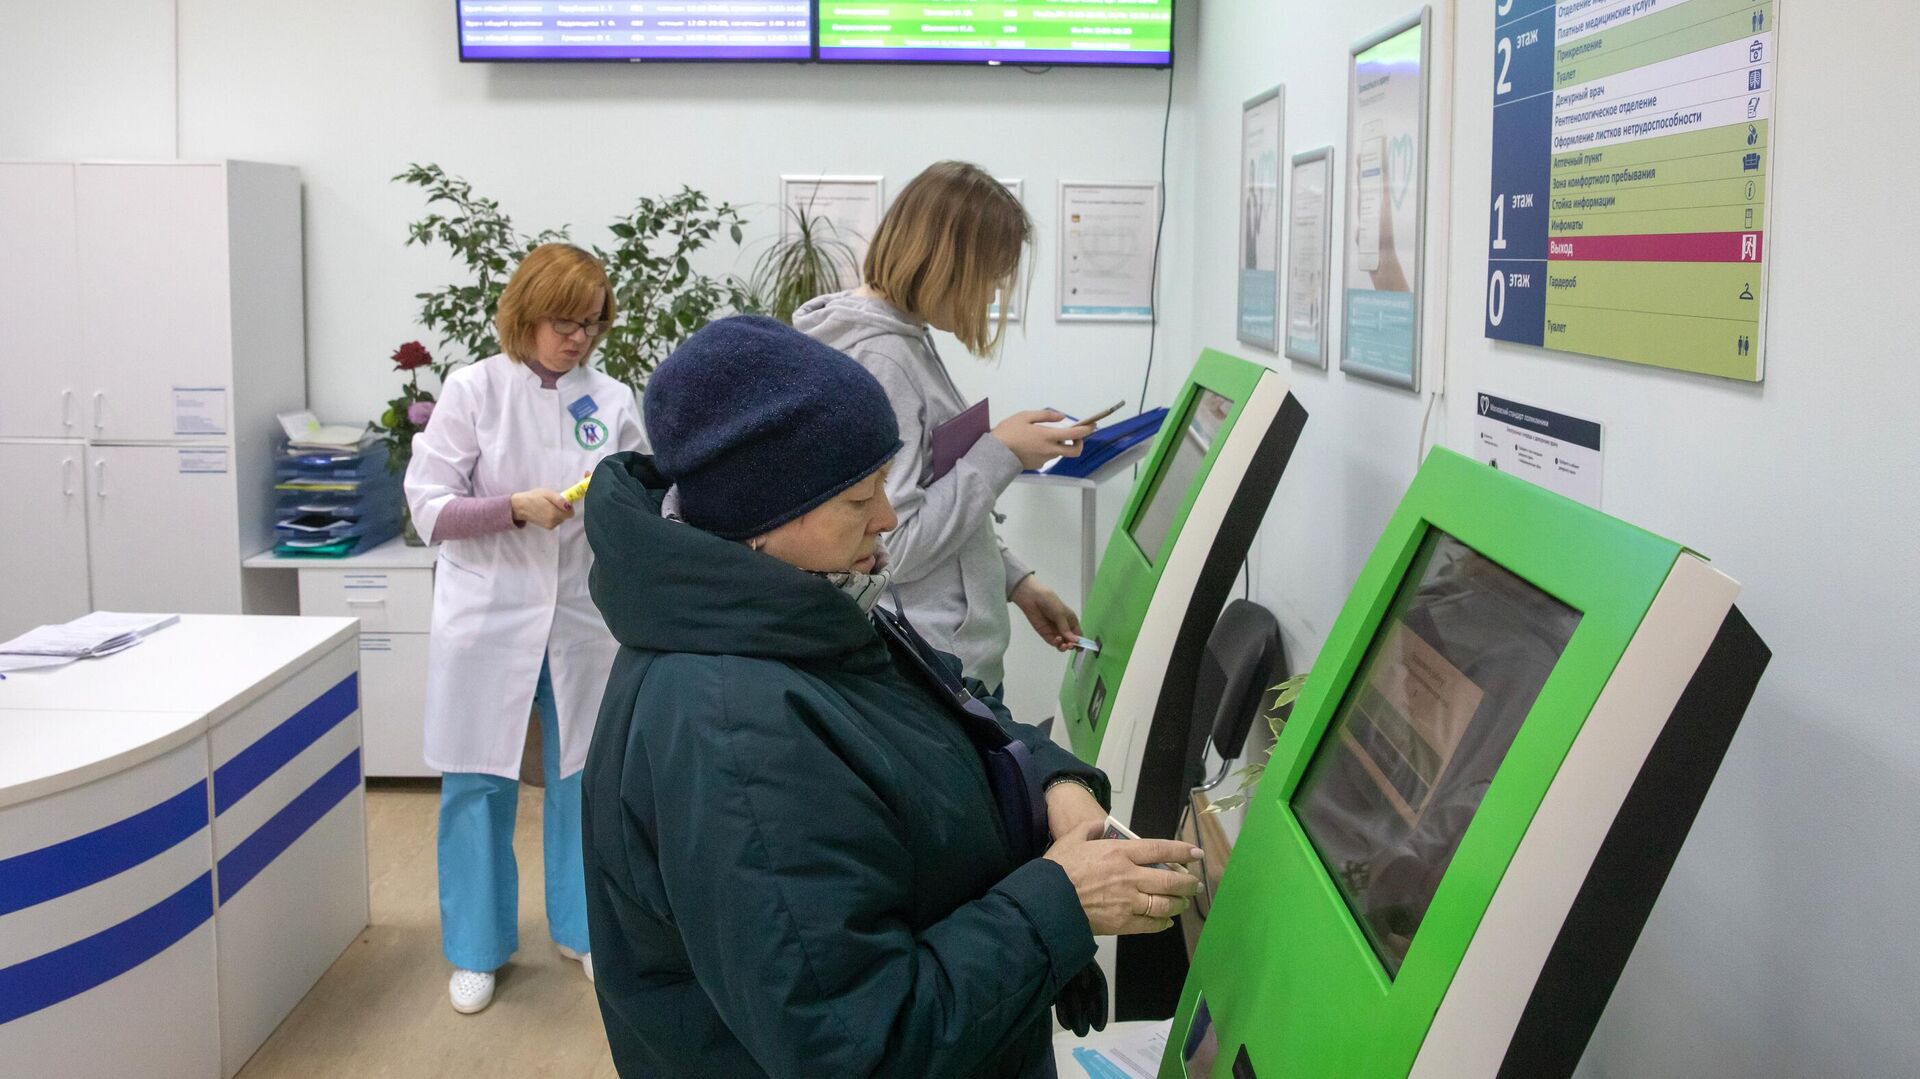  Пациенты записываются на прием к врачу через электронные терминалы в Москве   - РИА Новости, 1920, 26.01.2021